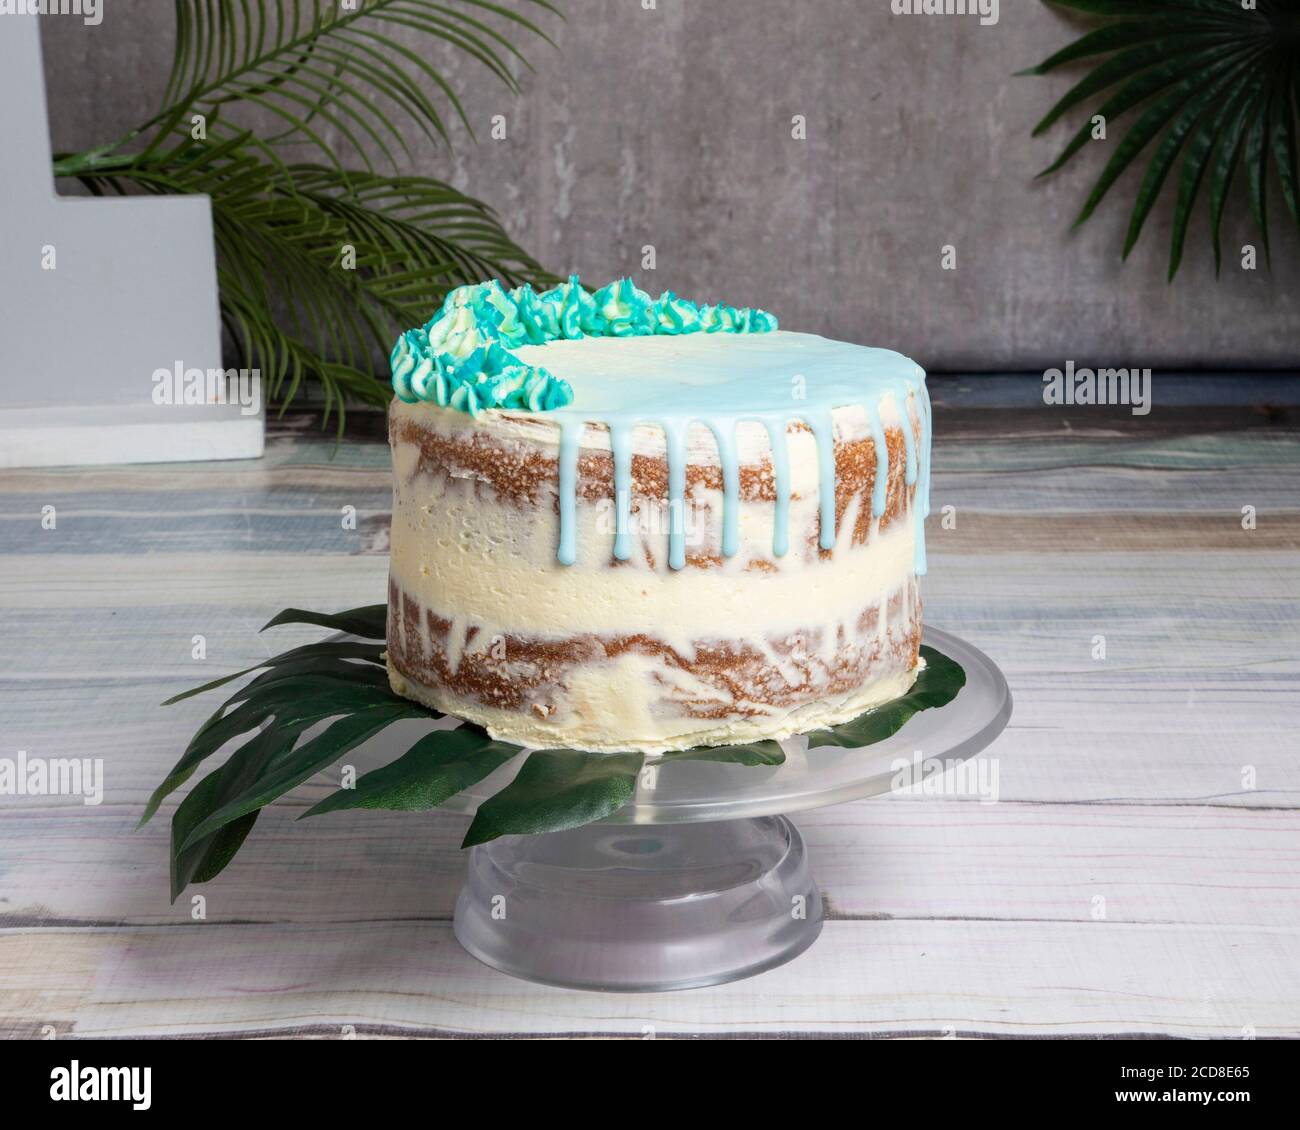 Celebration cakes Stock Photo